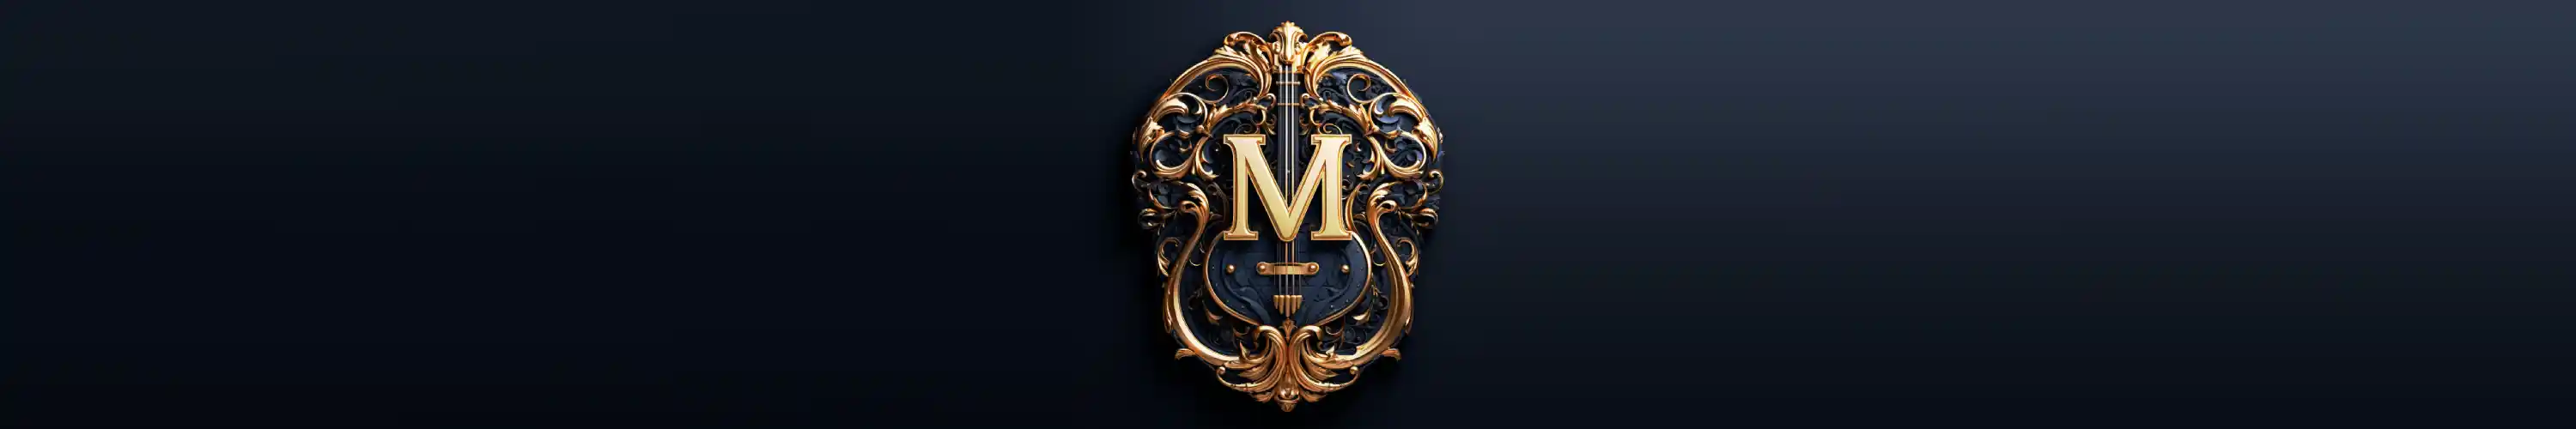 Muzikantenbank Logo Breed voor Desktop